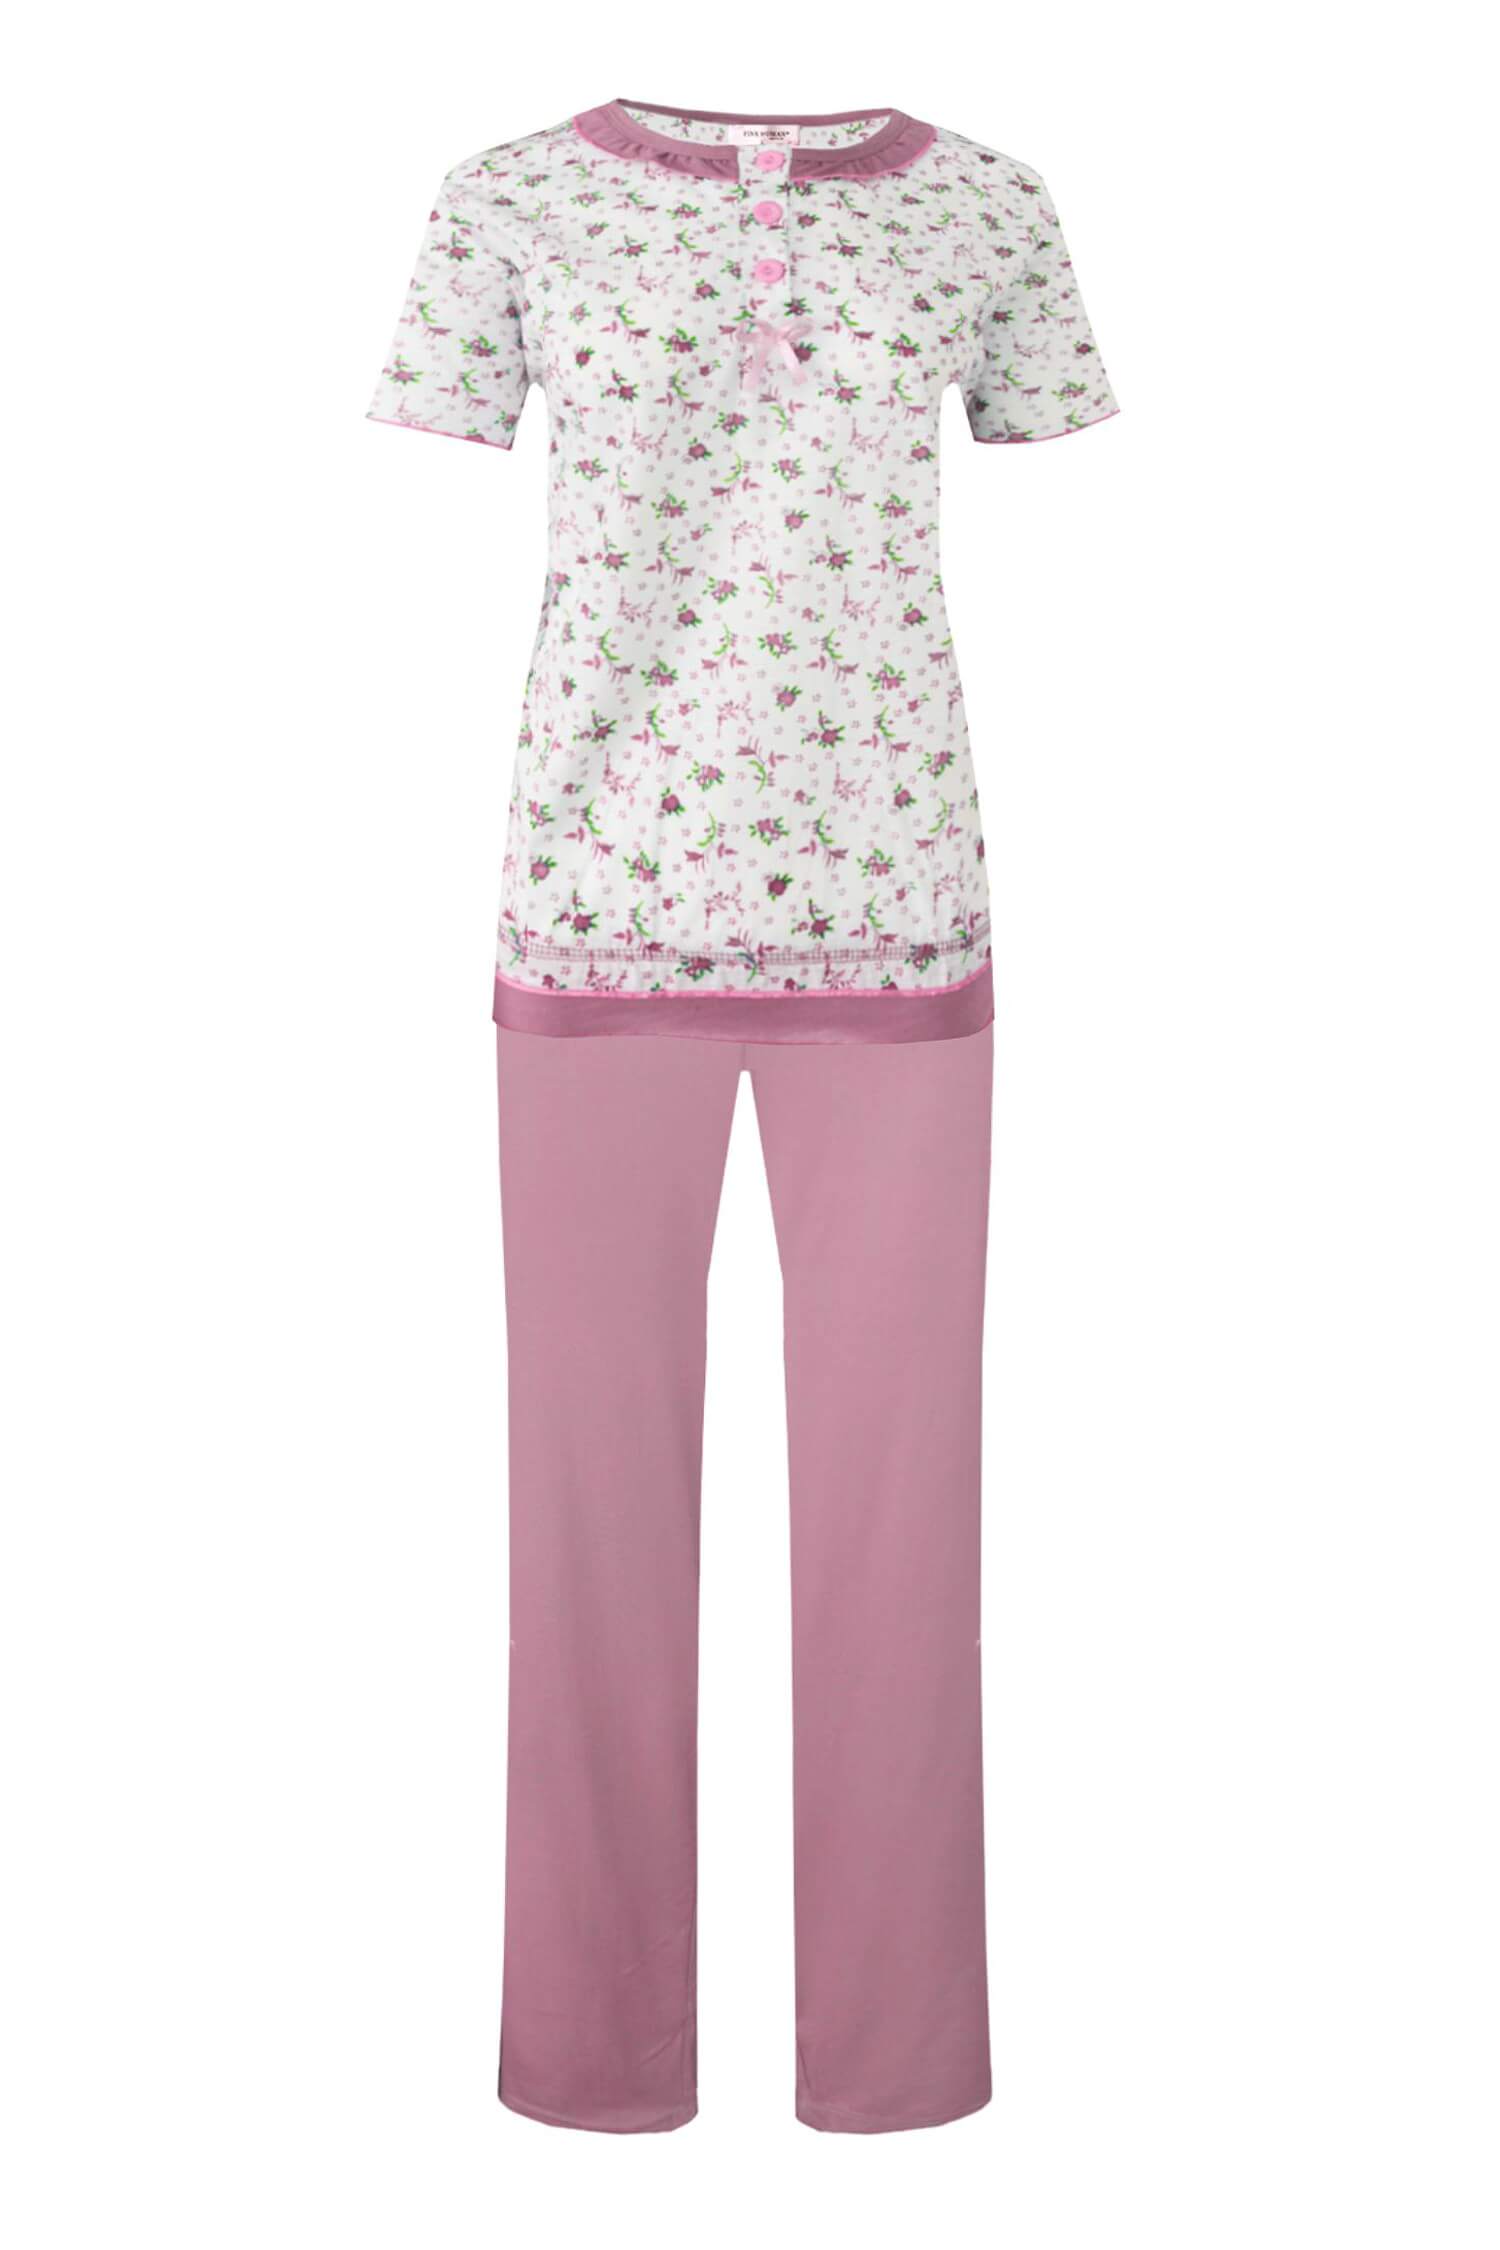 Astrid dámské pyžamo krátký rukáv 2201 L světle růžová